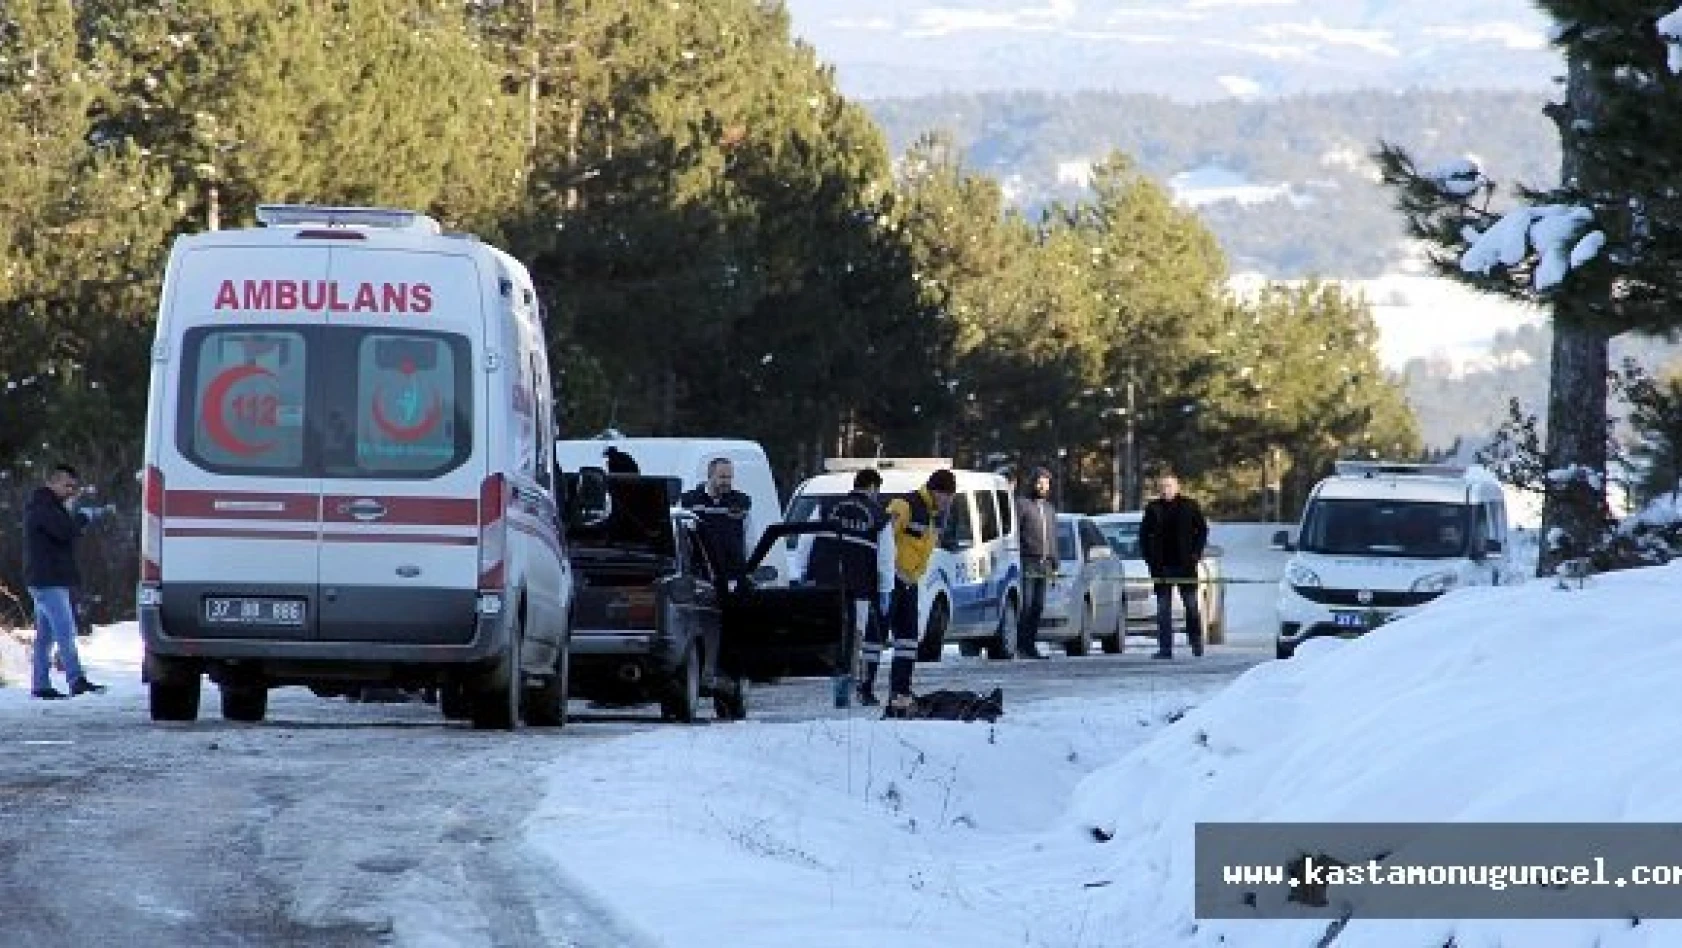 Kastamonu'da Silahlı Saldırı: 1 Ölü, 1 Yaralı